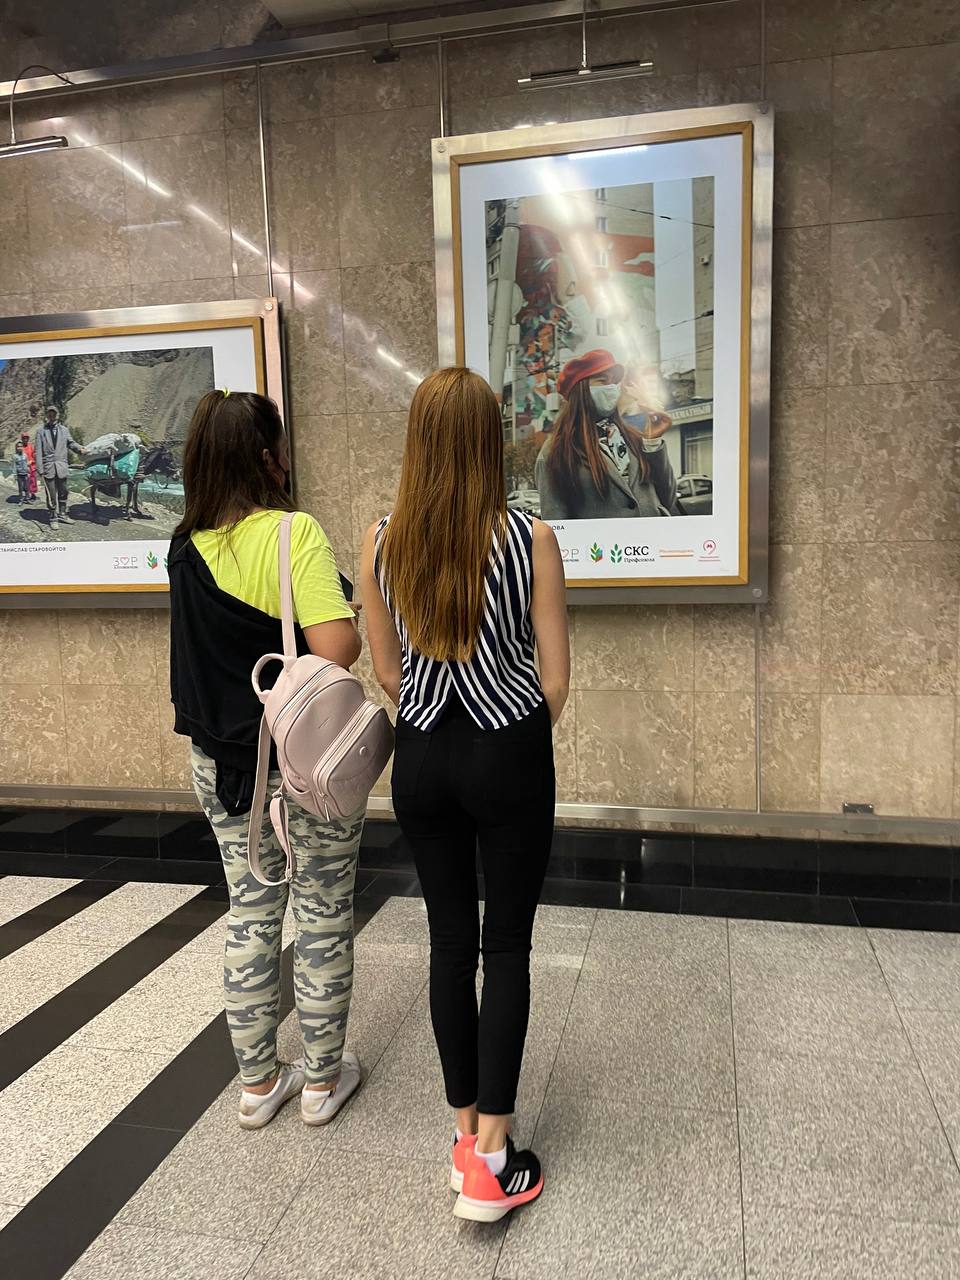 Лучшие снимки красот России вновь представили в московском метро 